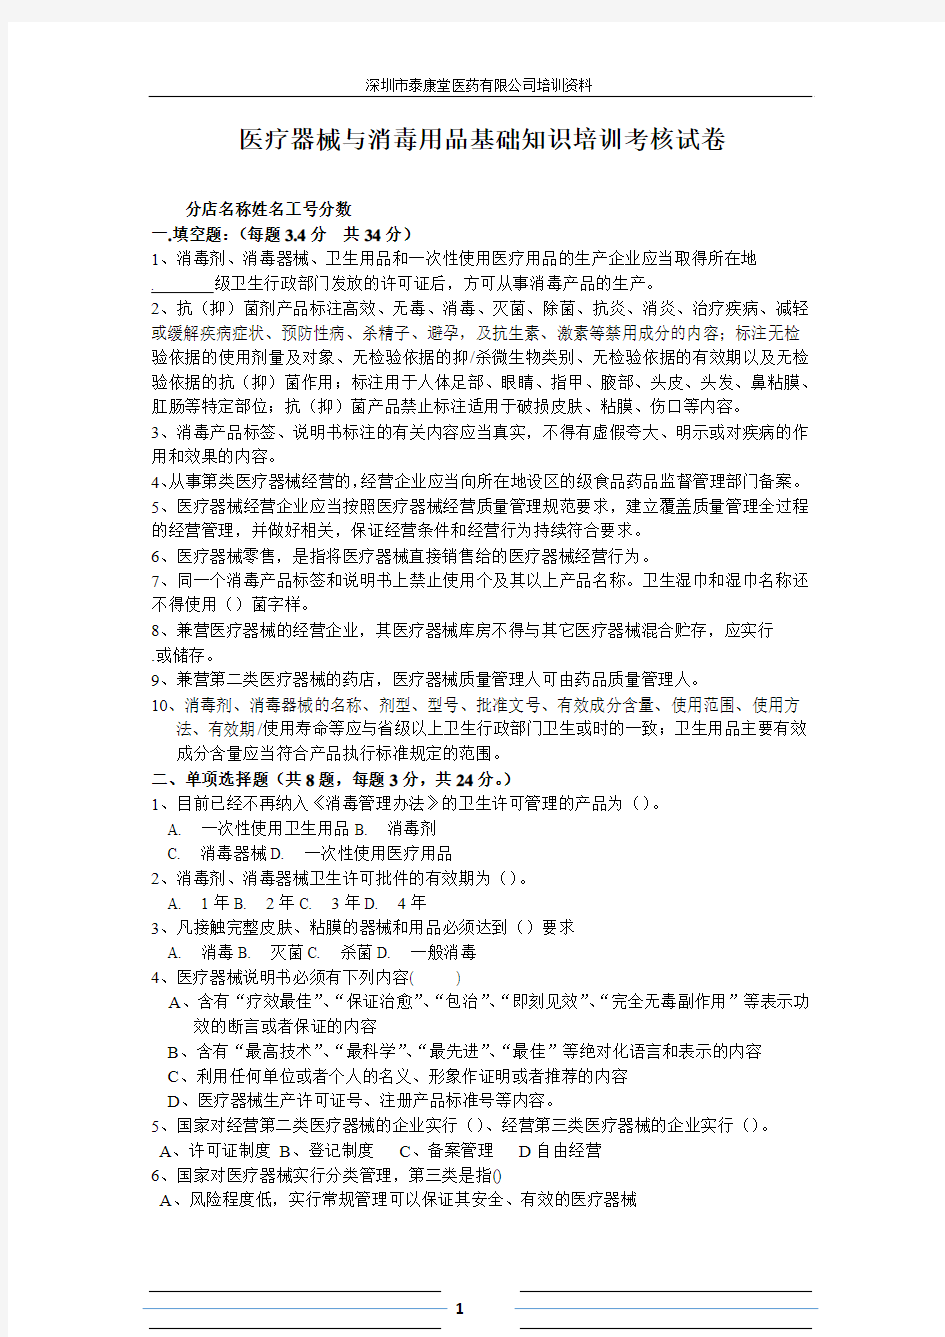 深圳市泰康堂医疗器械与消毒用品基础知识培训考核试卷